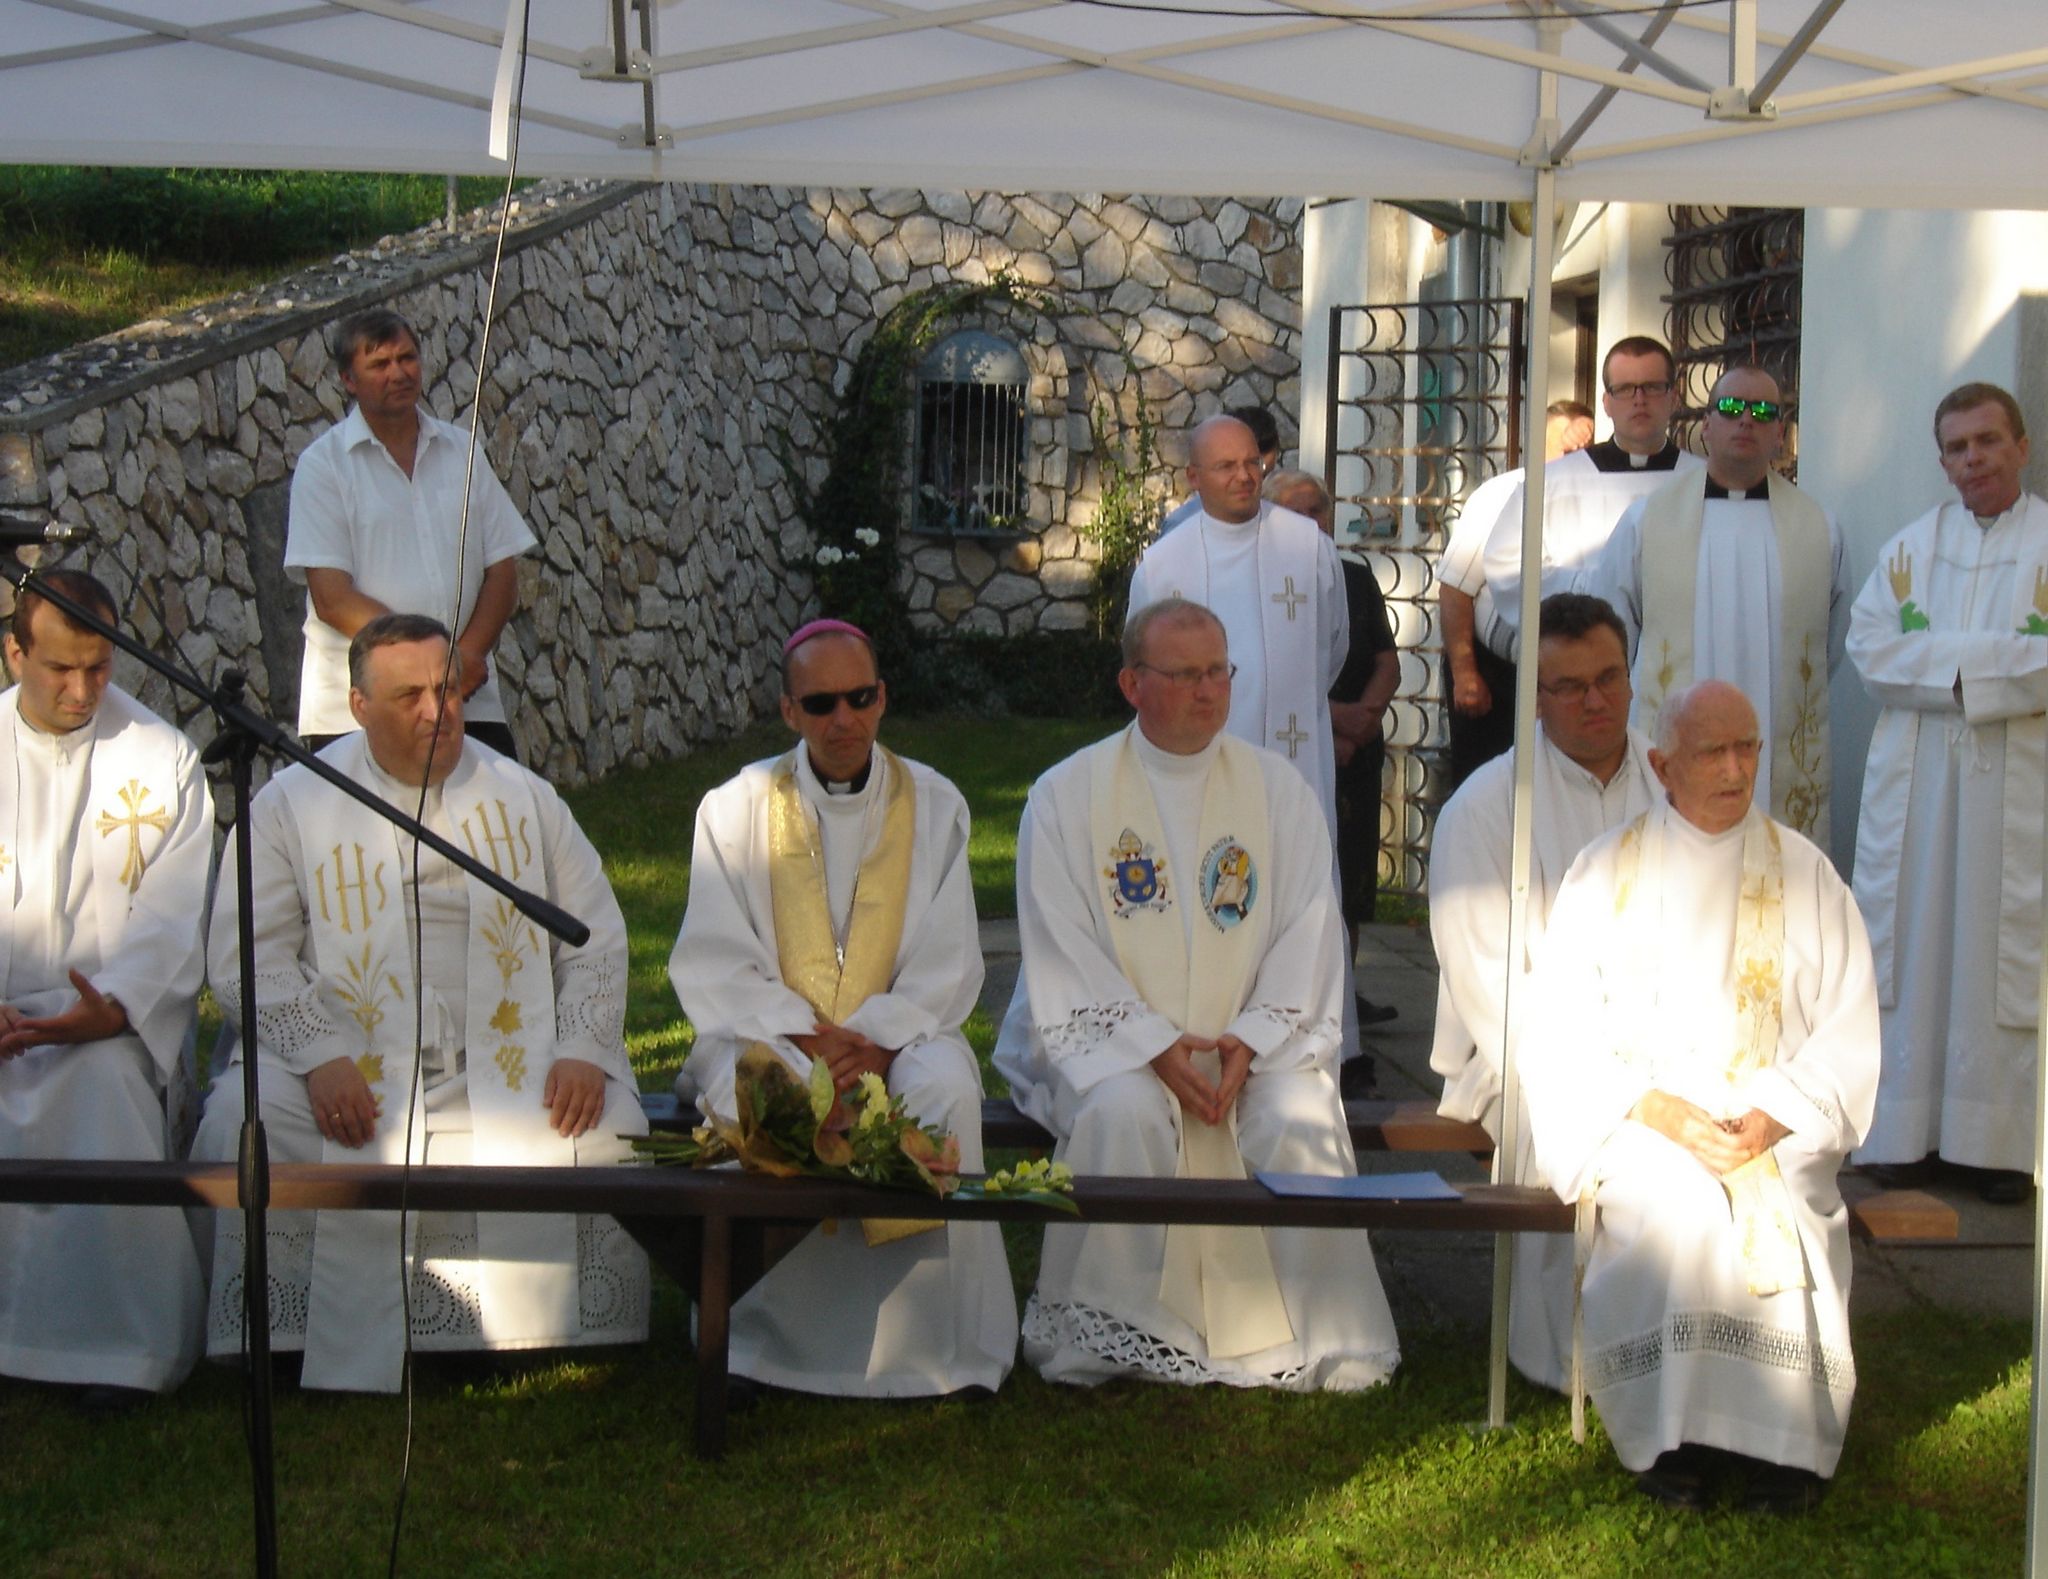 Haľko József püspök és paptestvérei a templomkertben tartott kegyeleti megemlékezésen. Fotó: Bodzsár Gyula